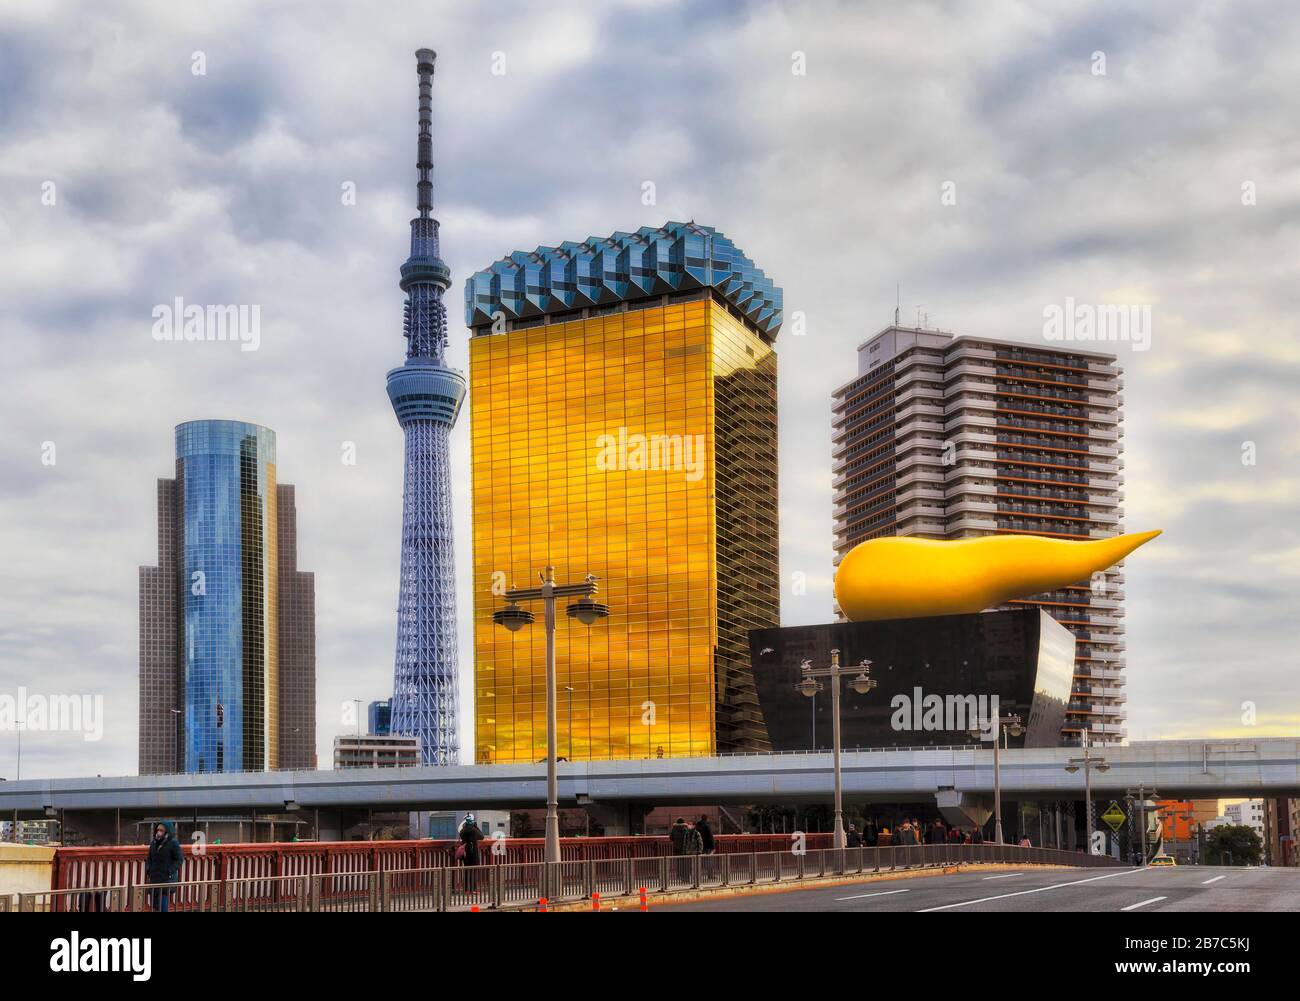 Grande tour de télévision et de radio ronde dans la ville de Tokyo au Japon, des feux de ciel et de rue le long du pont. Banque D'Images